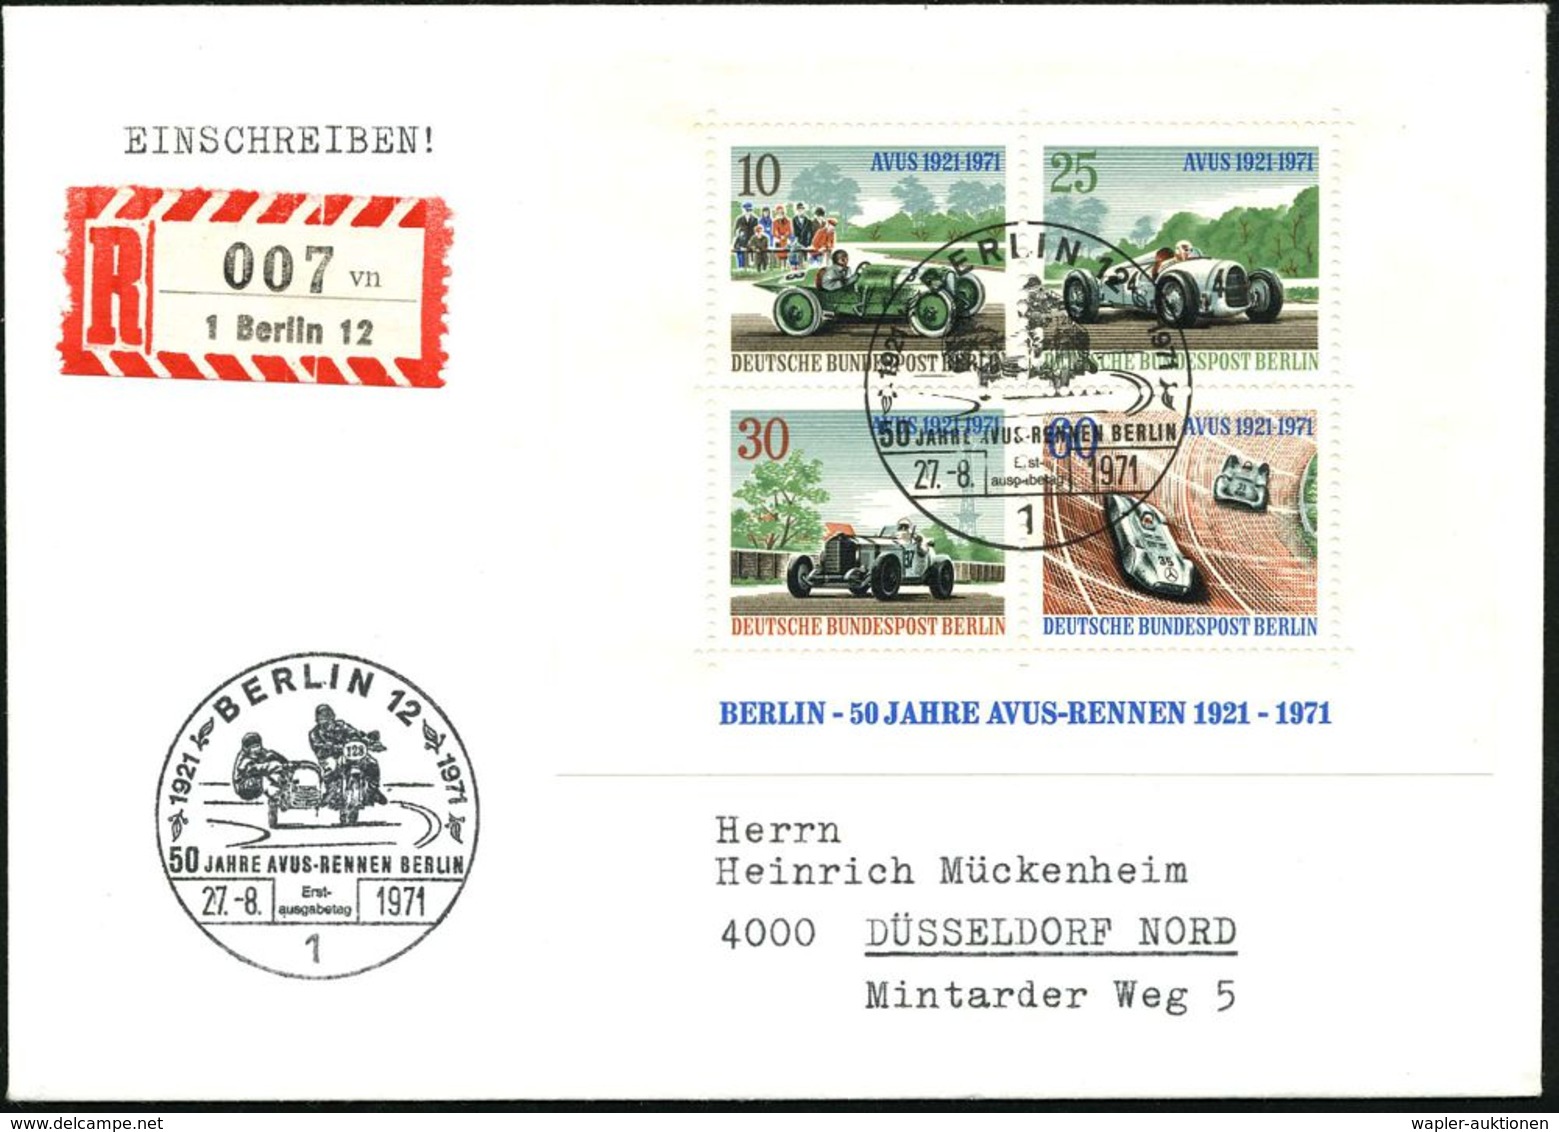 MOTORRAD & ZUBEHÖR : BERLIN 1971 (27.8.) SSt.: 1 BERLIN 12/50 JAHRE AVUS-RENNEN.. = Renn-Motorrad Mit Seitenwagen 2x Auf - Motorbikes